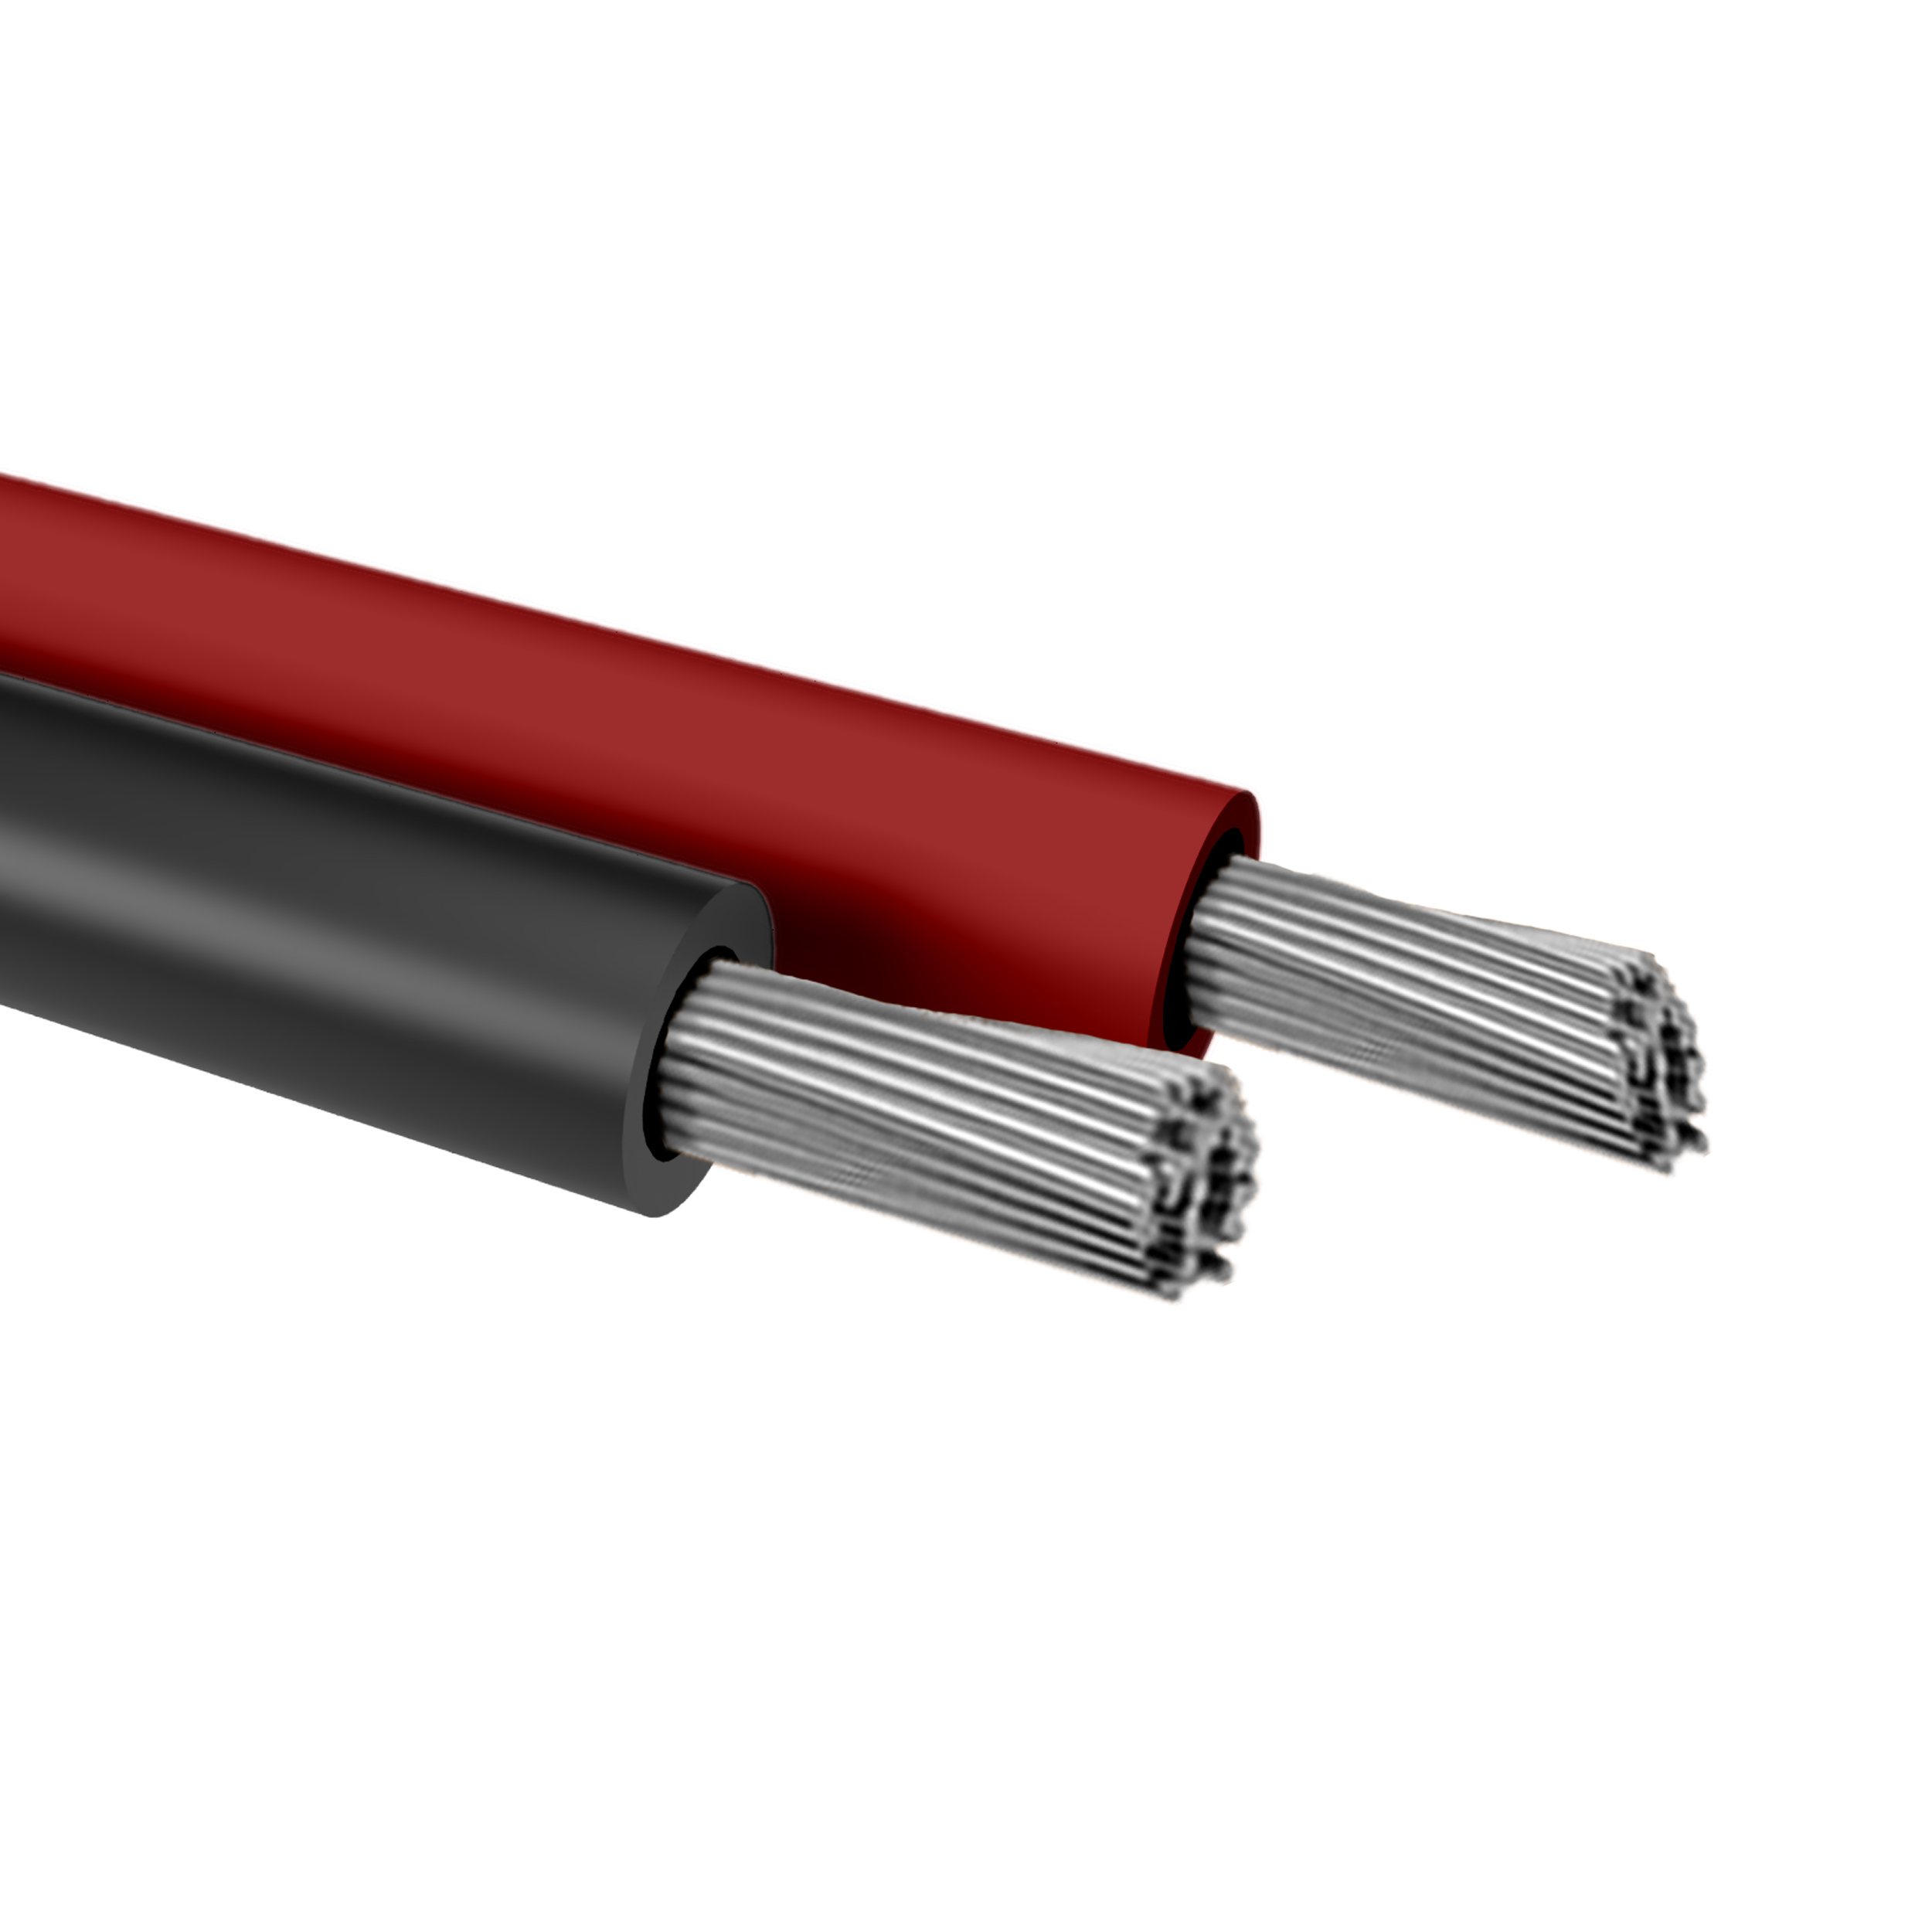 Batteriekabel Kabel Laderegler Photovoltaik 6mm² 10mm² 16mm² 25mm² 35mm²  BK-H07